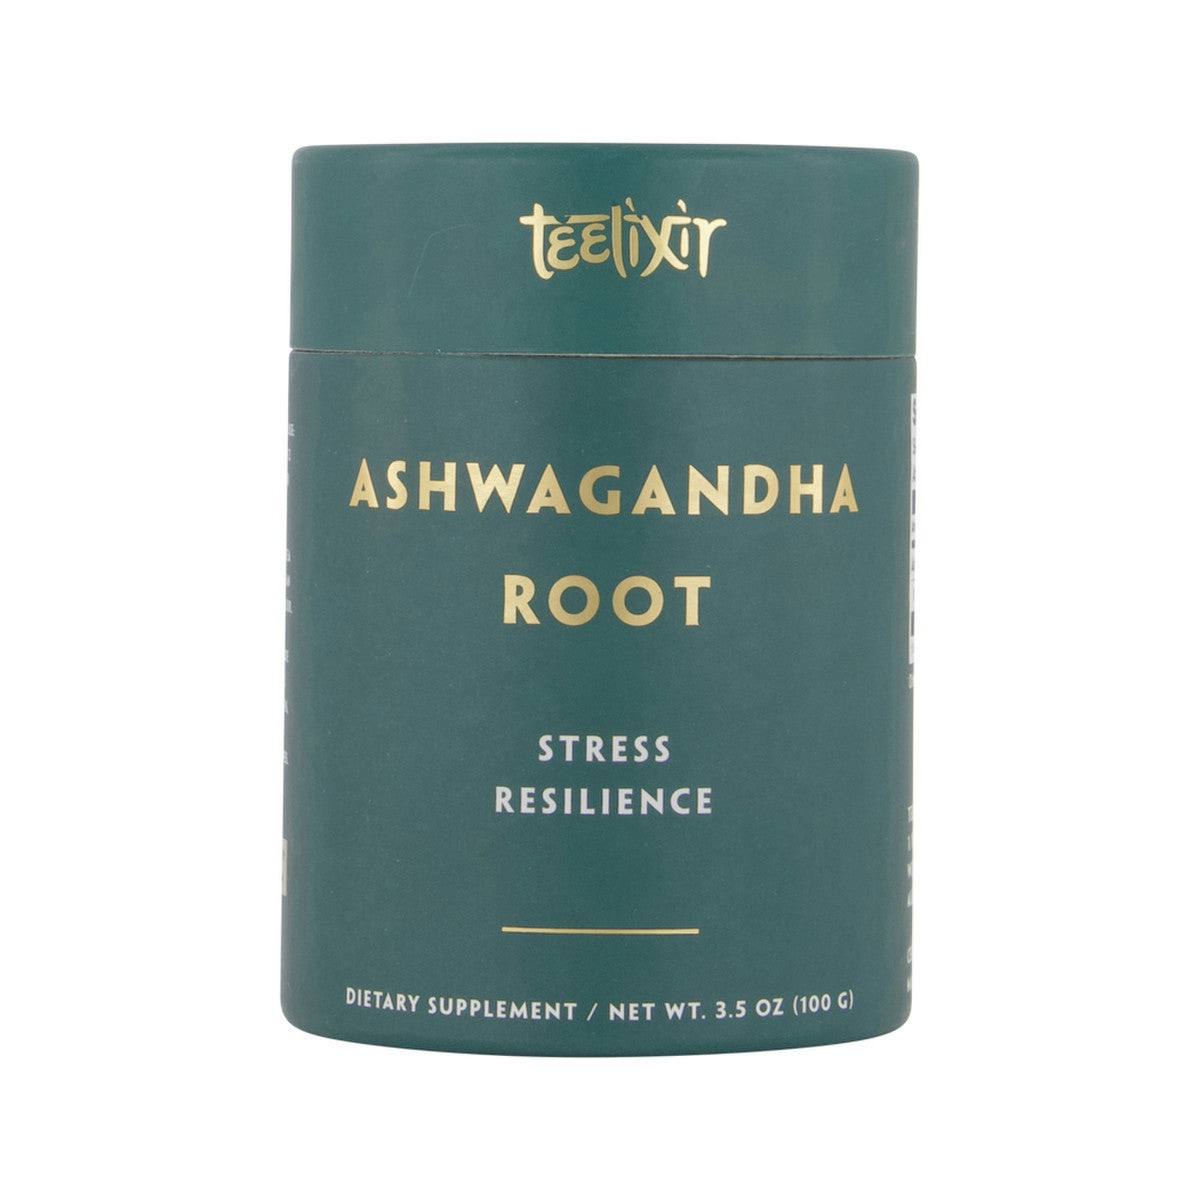 image of Teelixir Organic Ashwagandha Root (Stress Resilience) 50g on white background